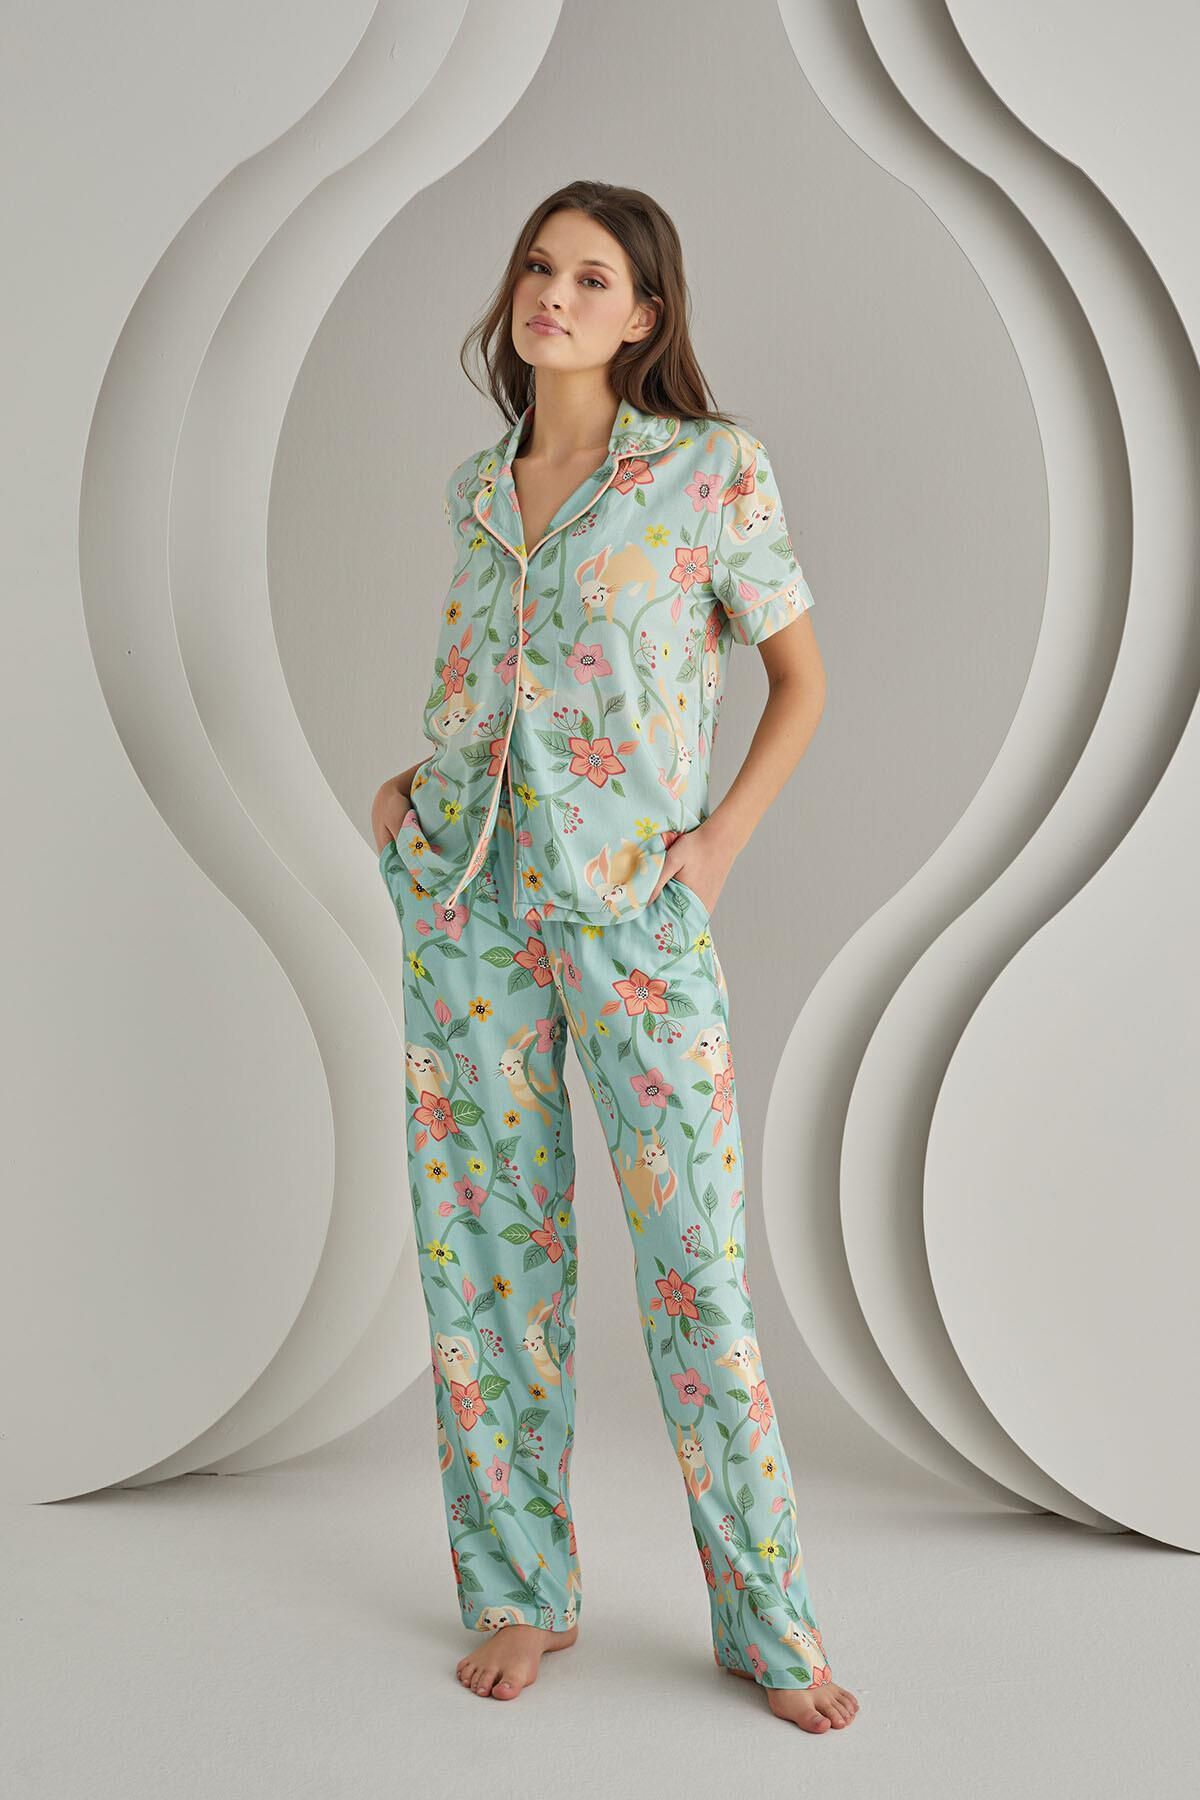 Nbb Yeşil Çiçek Desenli Önden Düğmeli Gömlekli Kadın Pijama Takımı, %100 Viskon